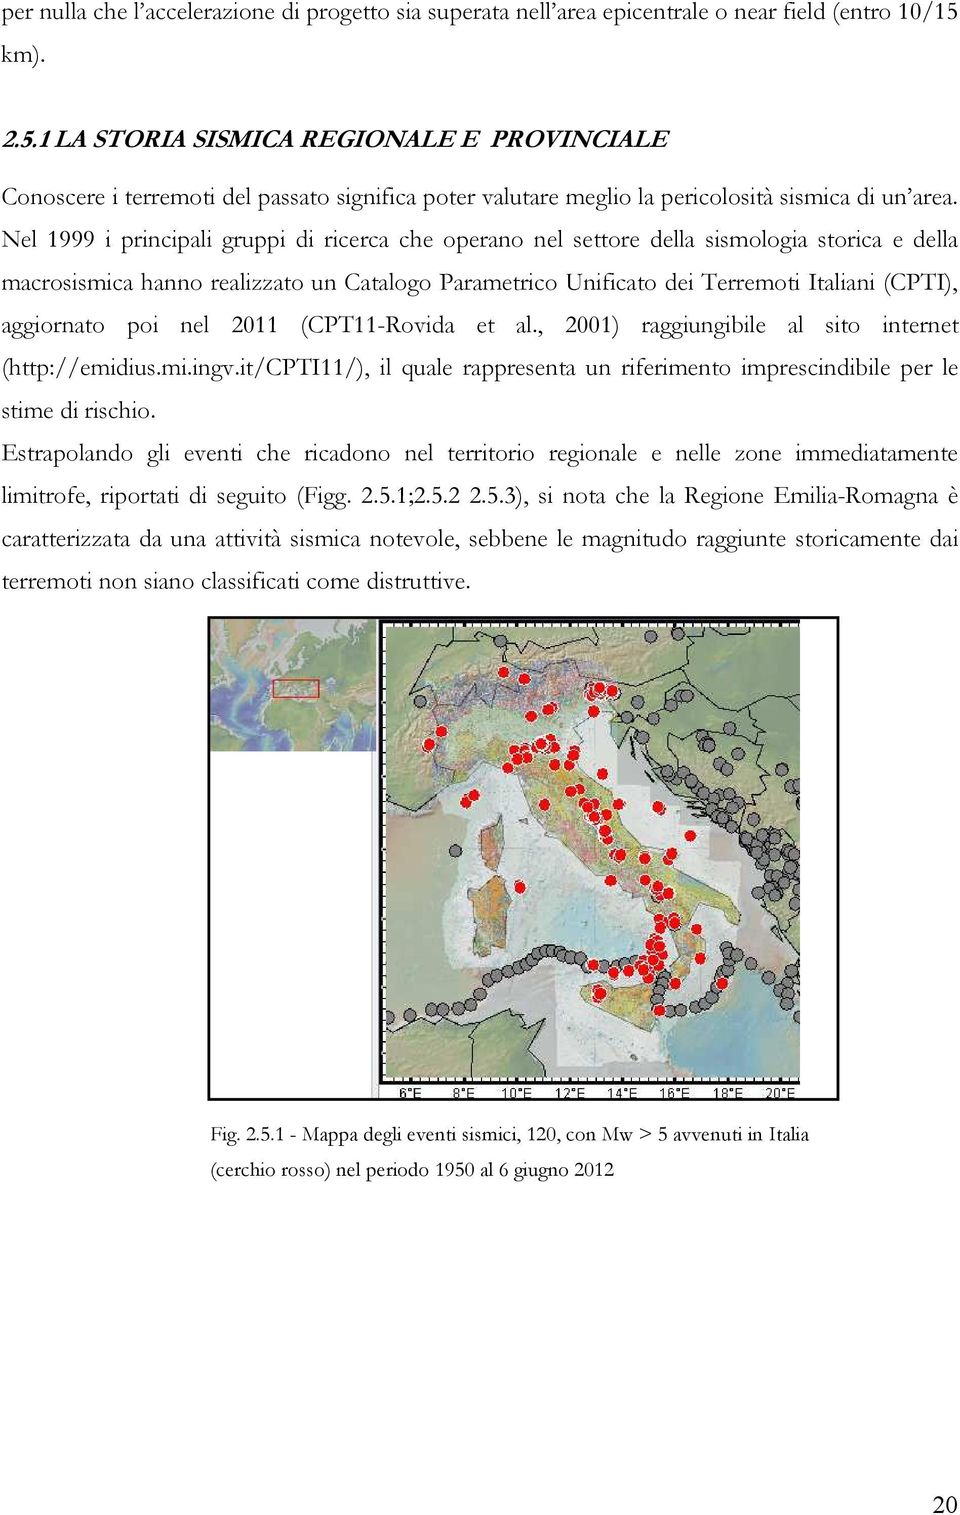 Nel 1999 i principali gruppi di ricerca che operano nel settore della sismologia storica e della macrosismica hanno realizzato un Catalogo Parametrico Unificato dei Terremoti Italiani (CPTI),